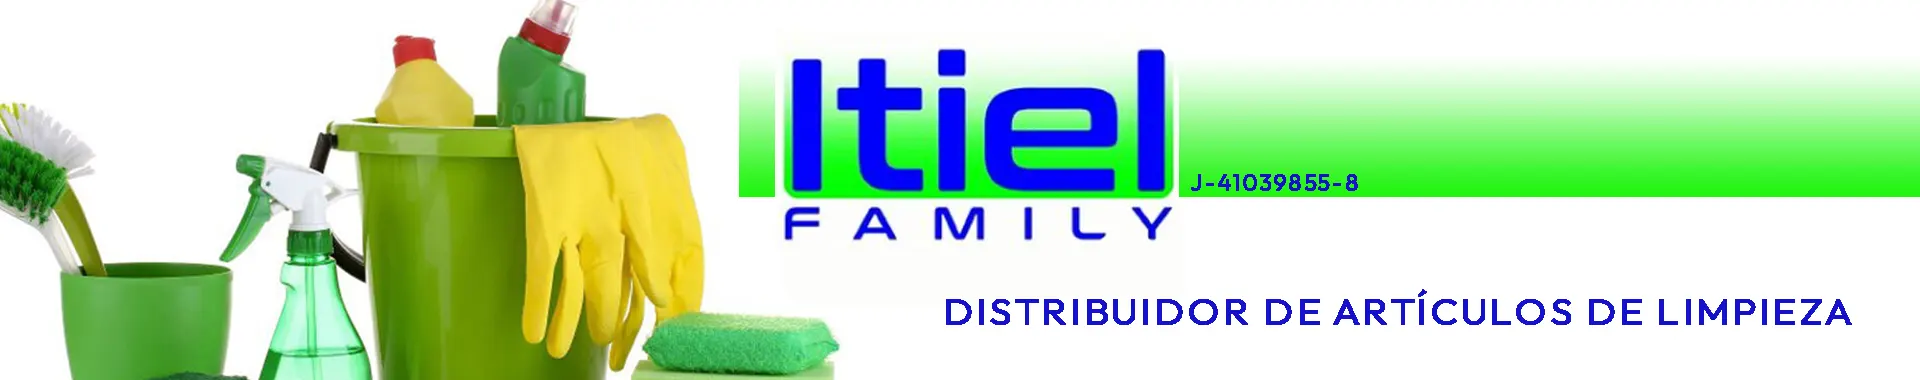 Imagen 1 del perfil de Itiel Family